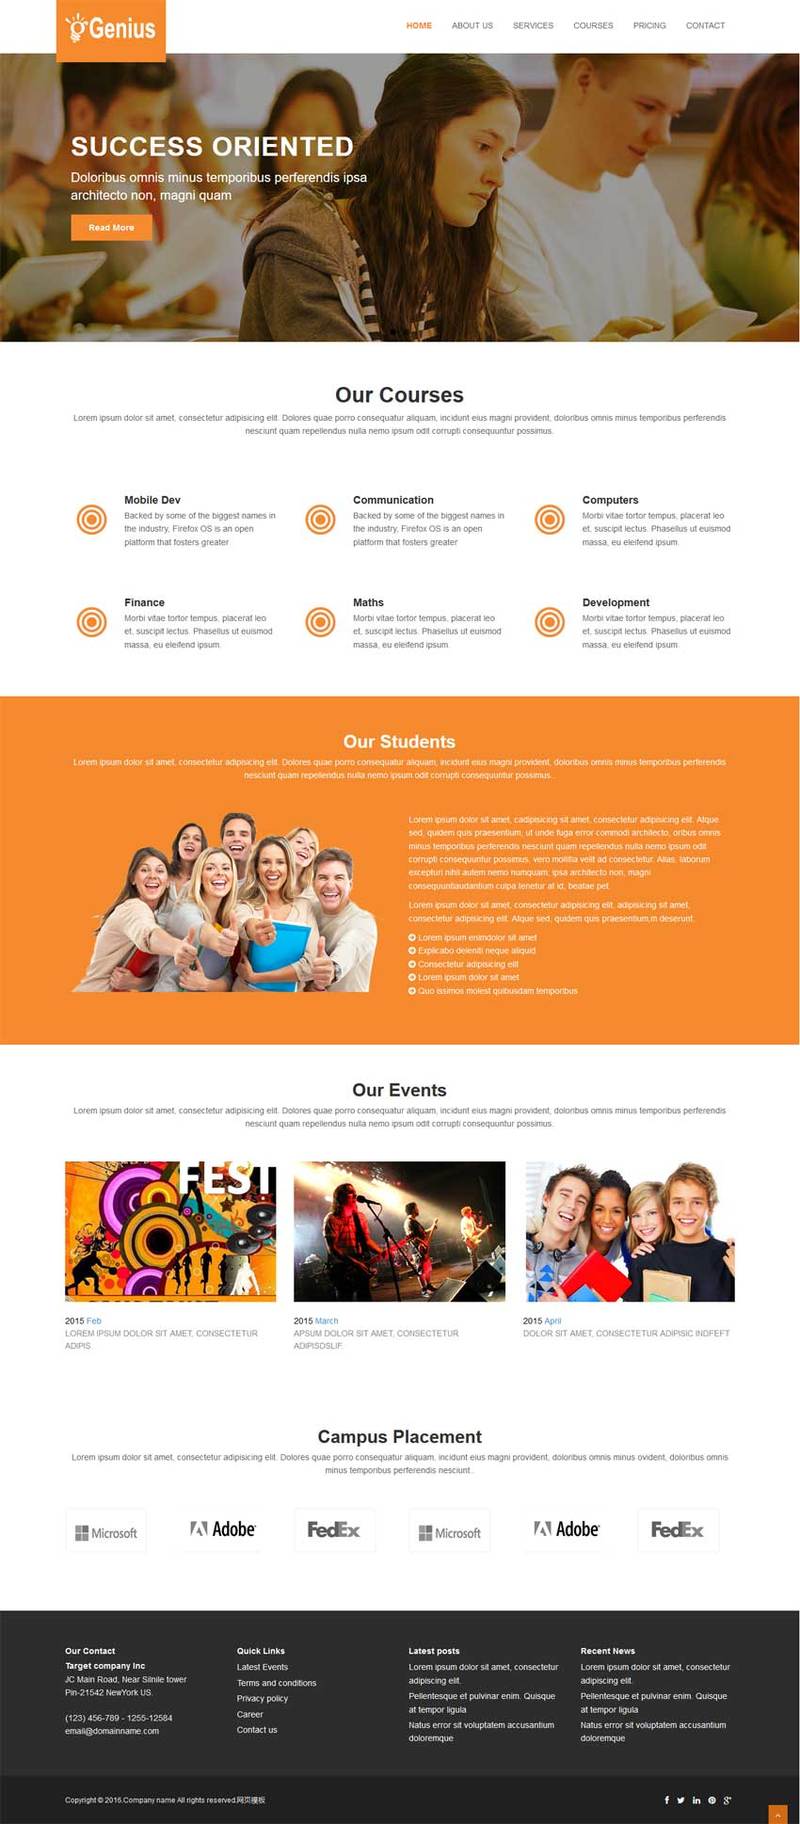 留学生活网站橙色宽屏风格的模板下载